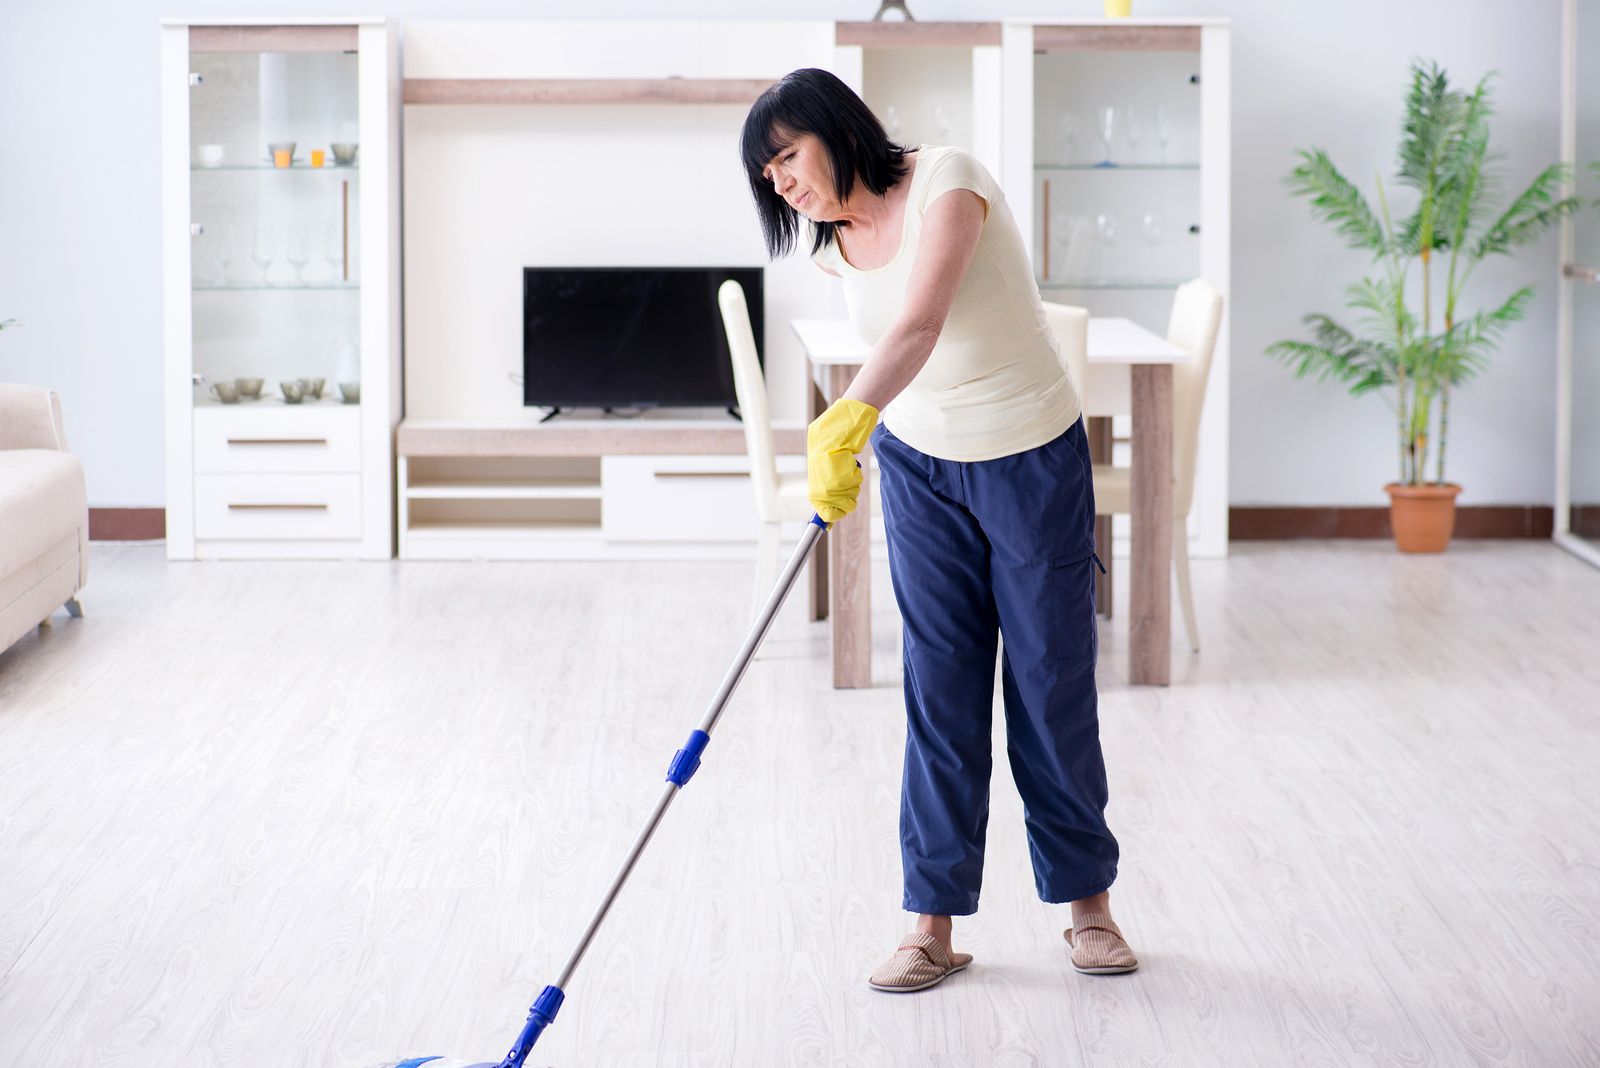 Aprovecha mientras haces las tareas del hogar para mantenerte en forma sin esfuerzo